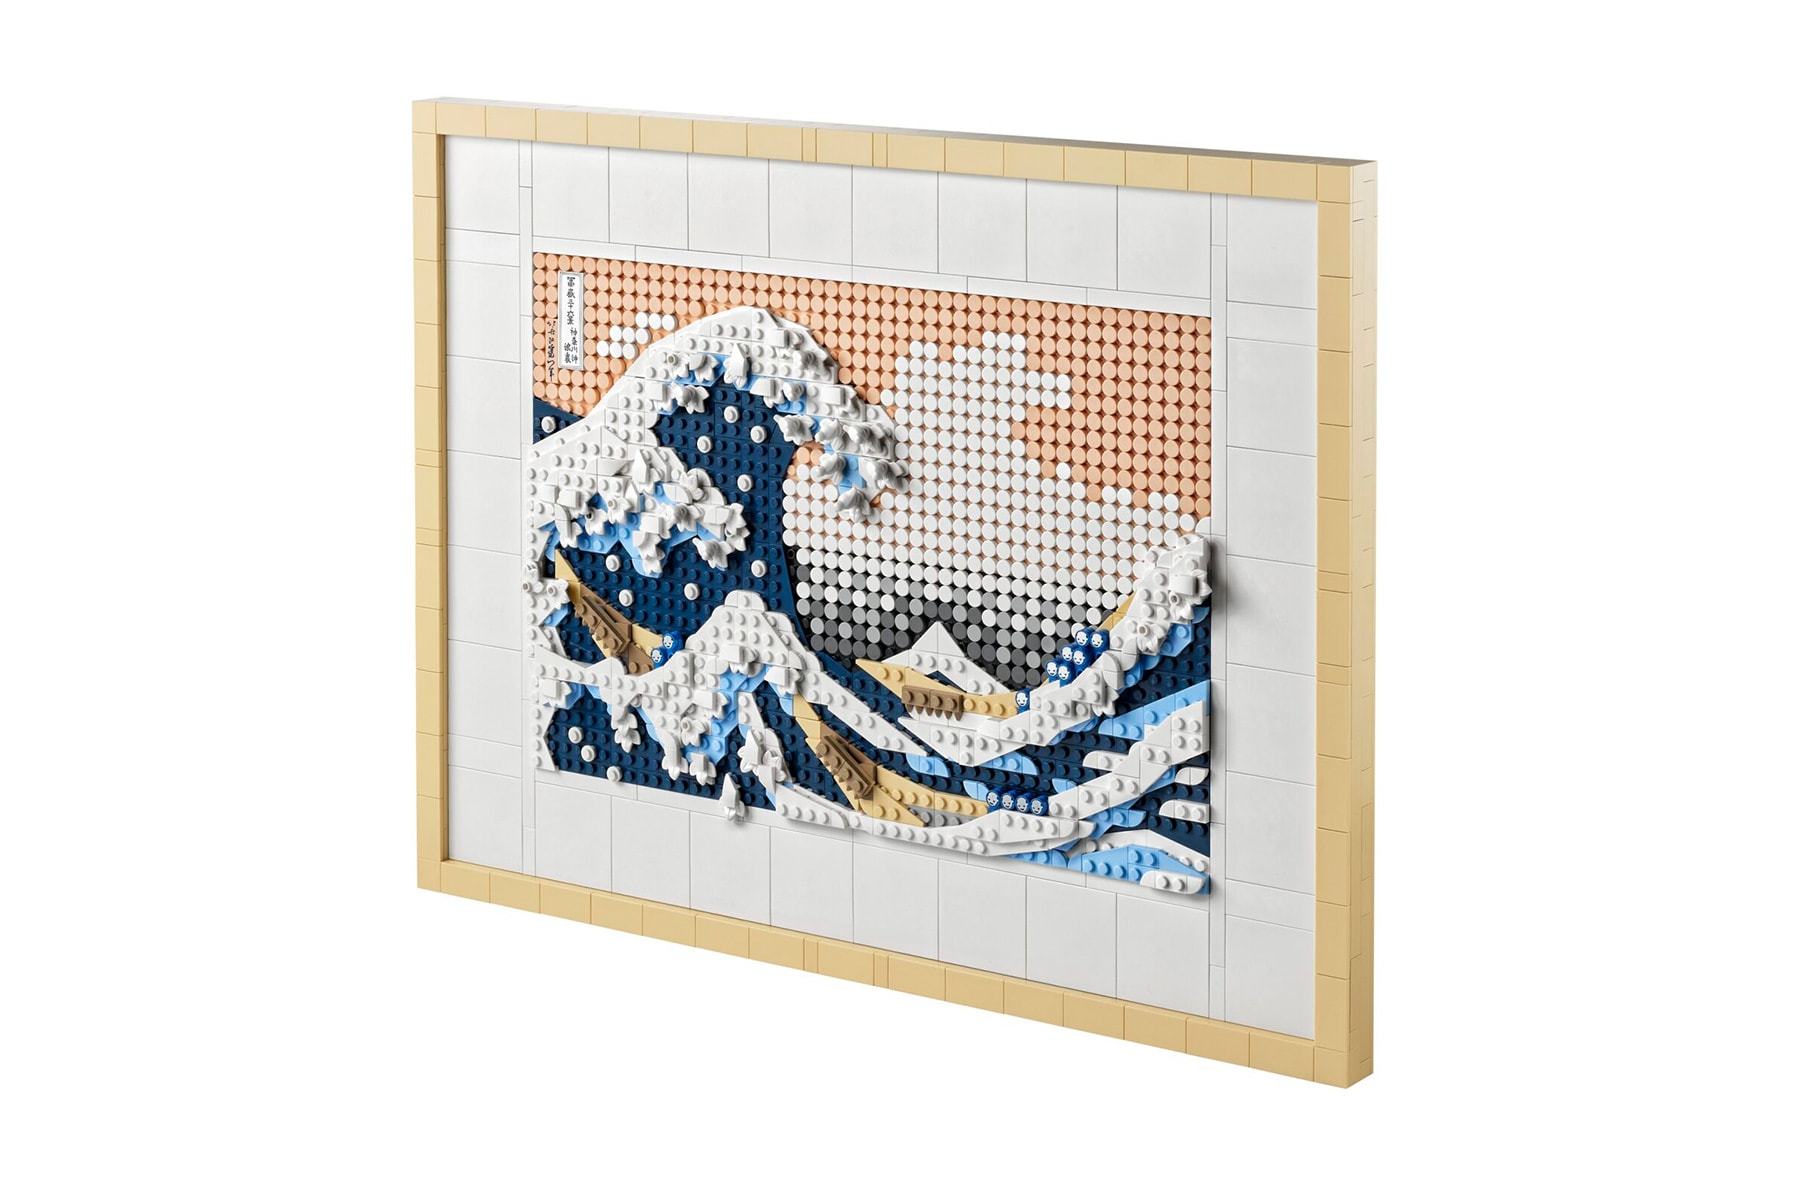 LEGO 推出葛飾北齋浮世繪名作《神奈川沖浪裏》積木模型